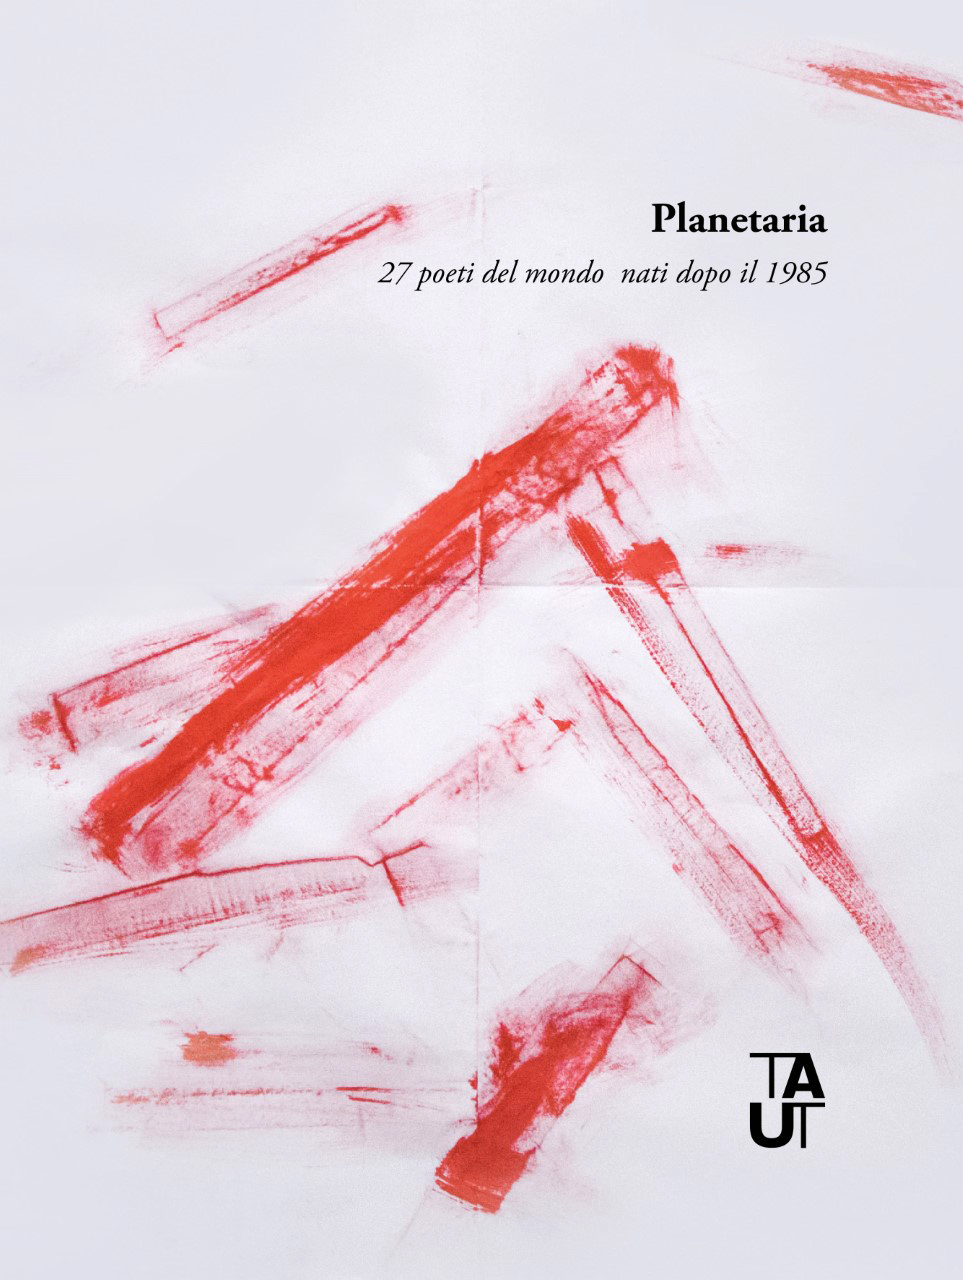 Planetaria, 27 poeti del mondo nati dopo il 1985